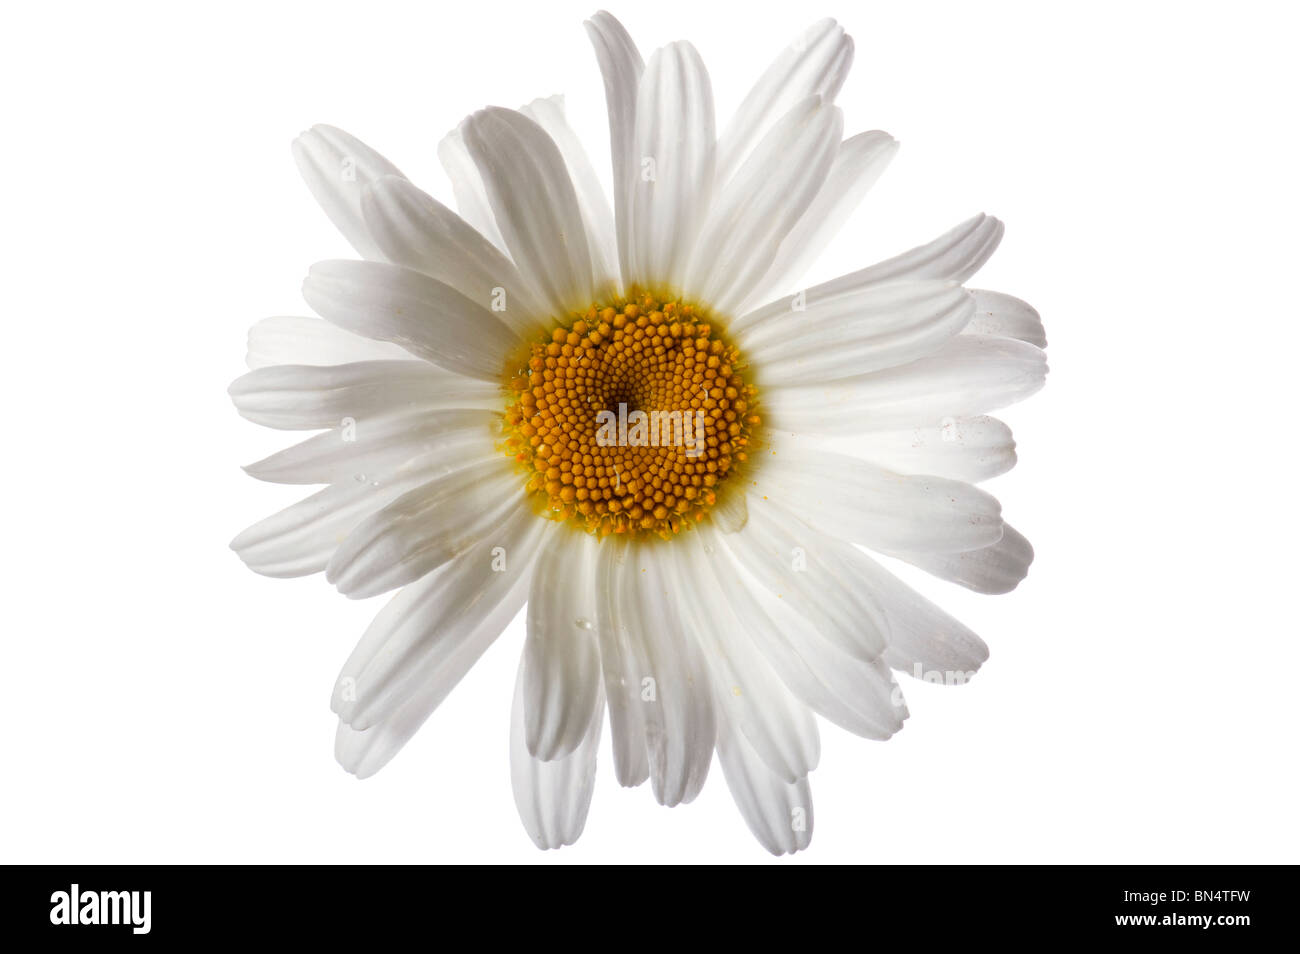 Objekt auf weiß - Blumen Kamille hautnah Stockfoto